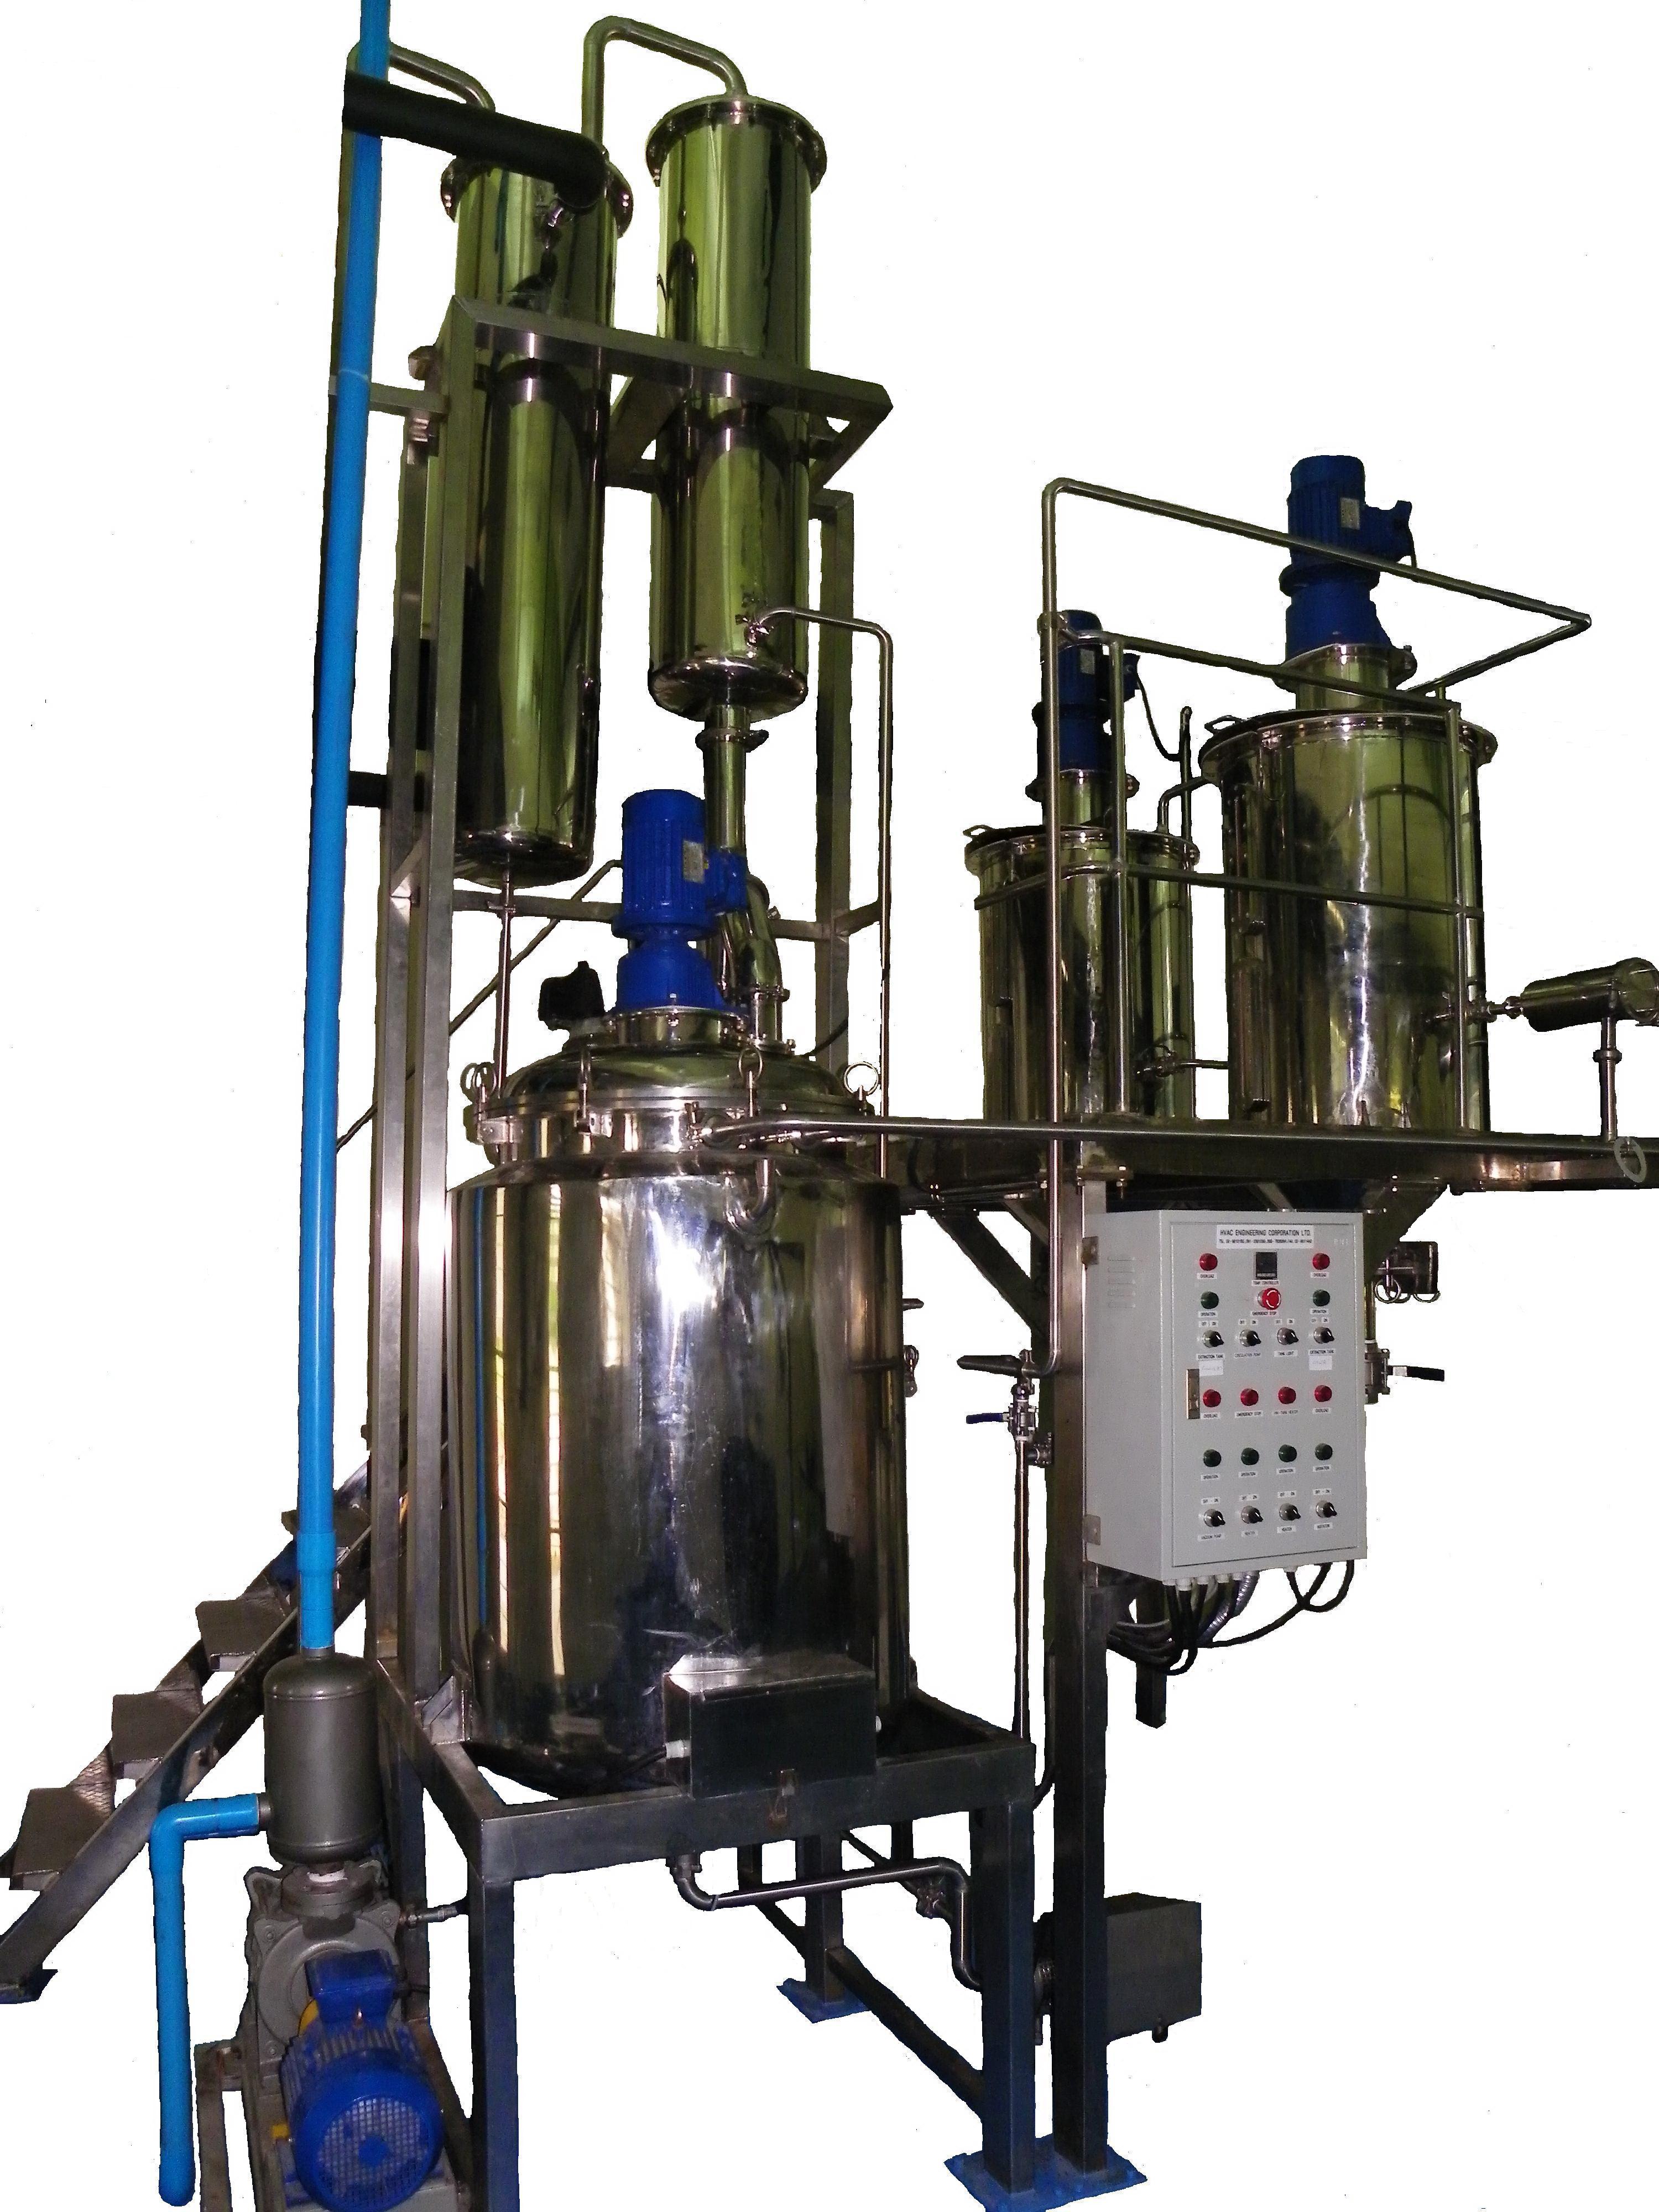 ชุดถังสกัดพร้อมเครือ่งระเหยแอลกอฮอล: Extractor with Alcohol vacuum evaporator set